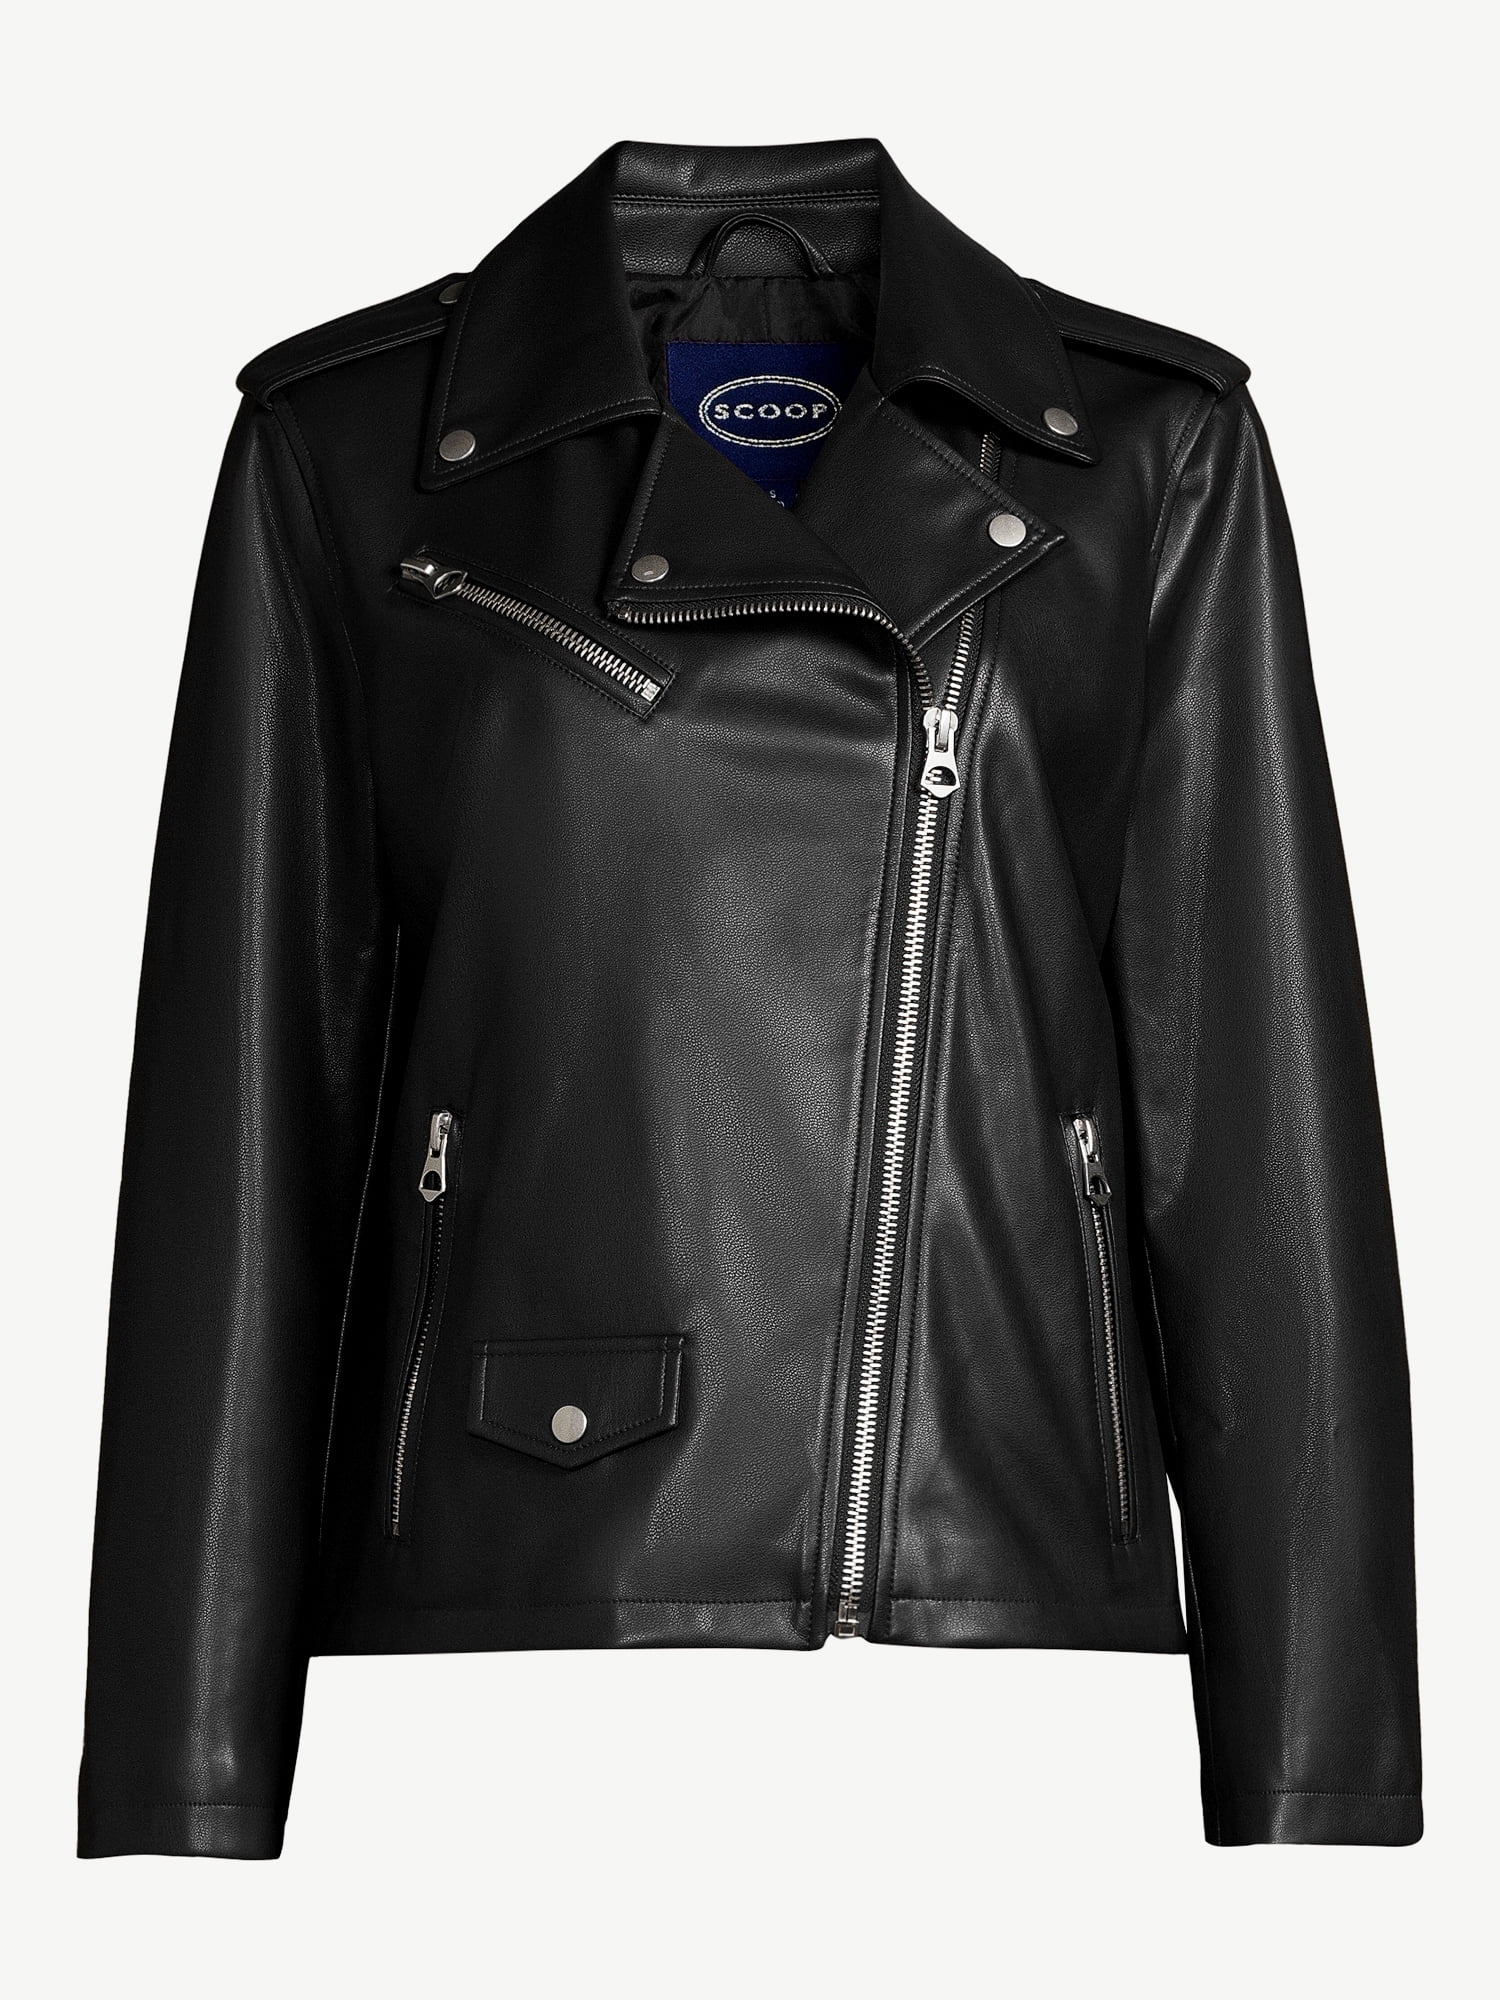 Scoop Women's Faux Leather Moto Jacket   Walmart.com